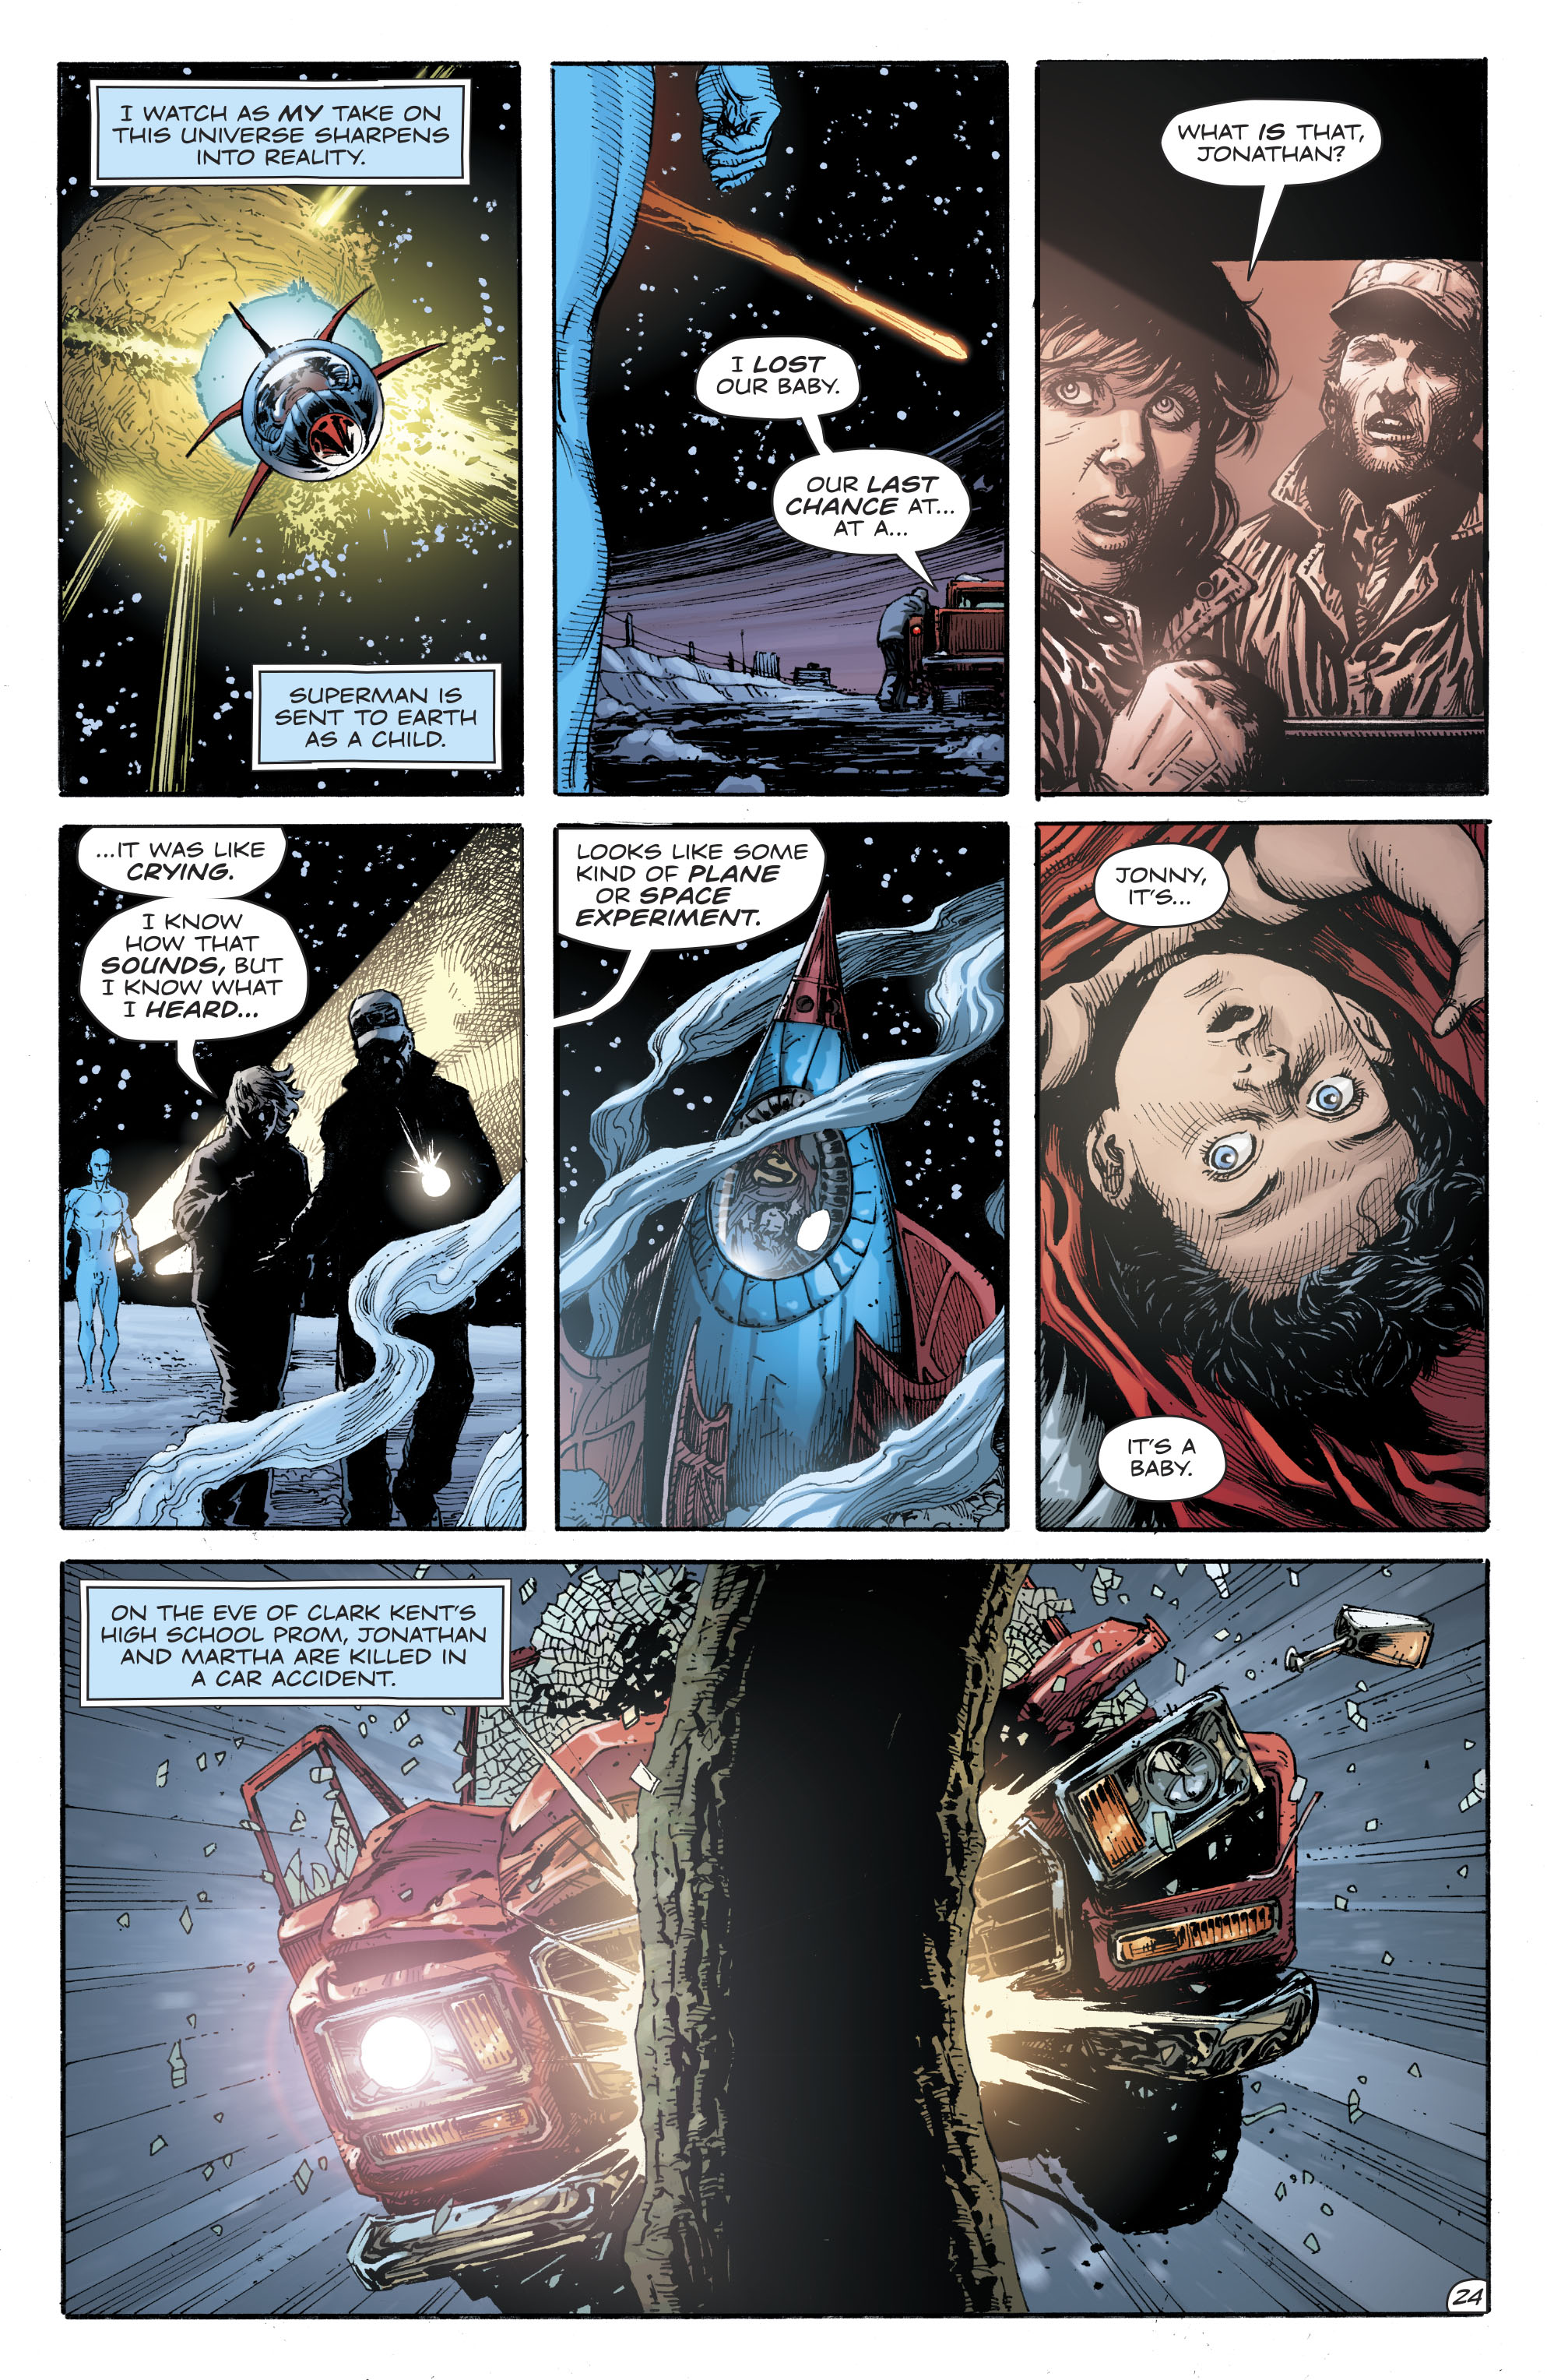 Doomsday Clock Issue 10 Read Doomsday Clock Issue 10 Comic Online In